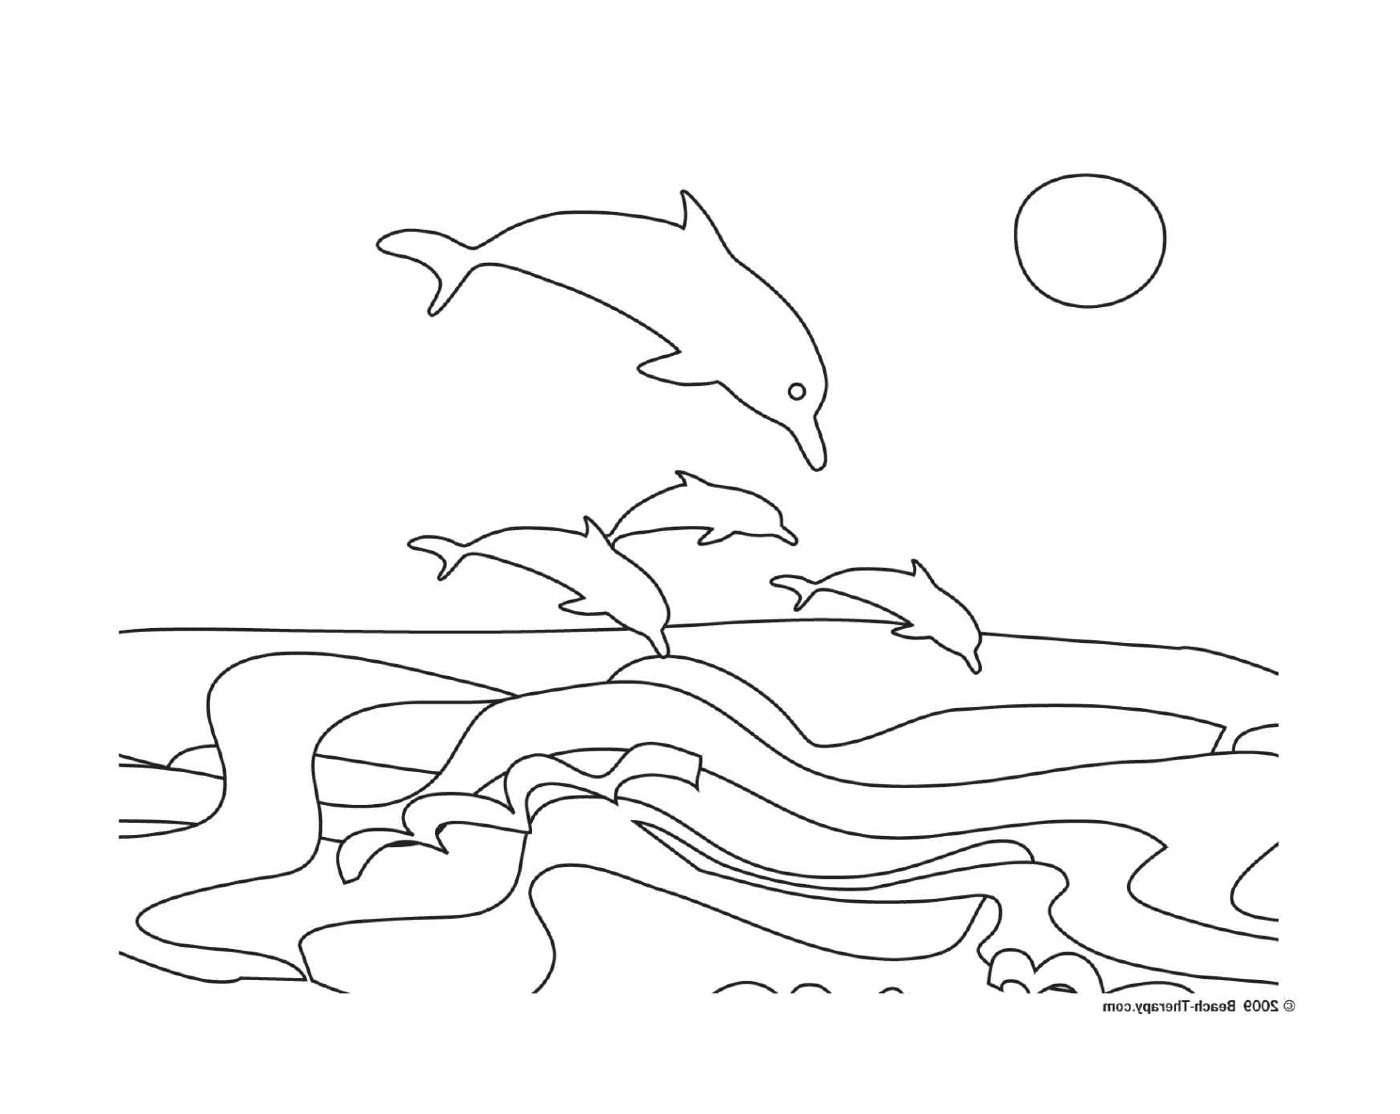   Groupe de dauphins sautant hors de l'eau 